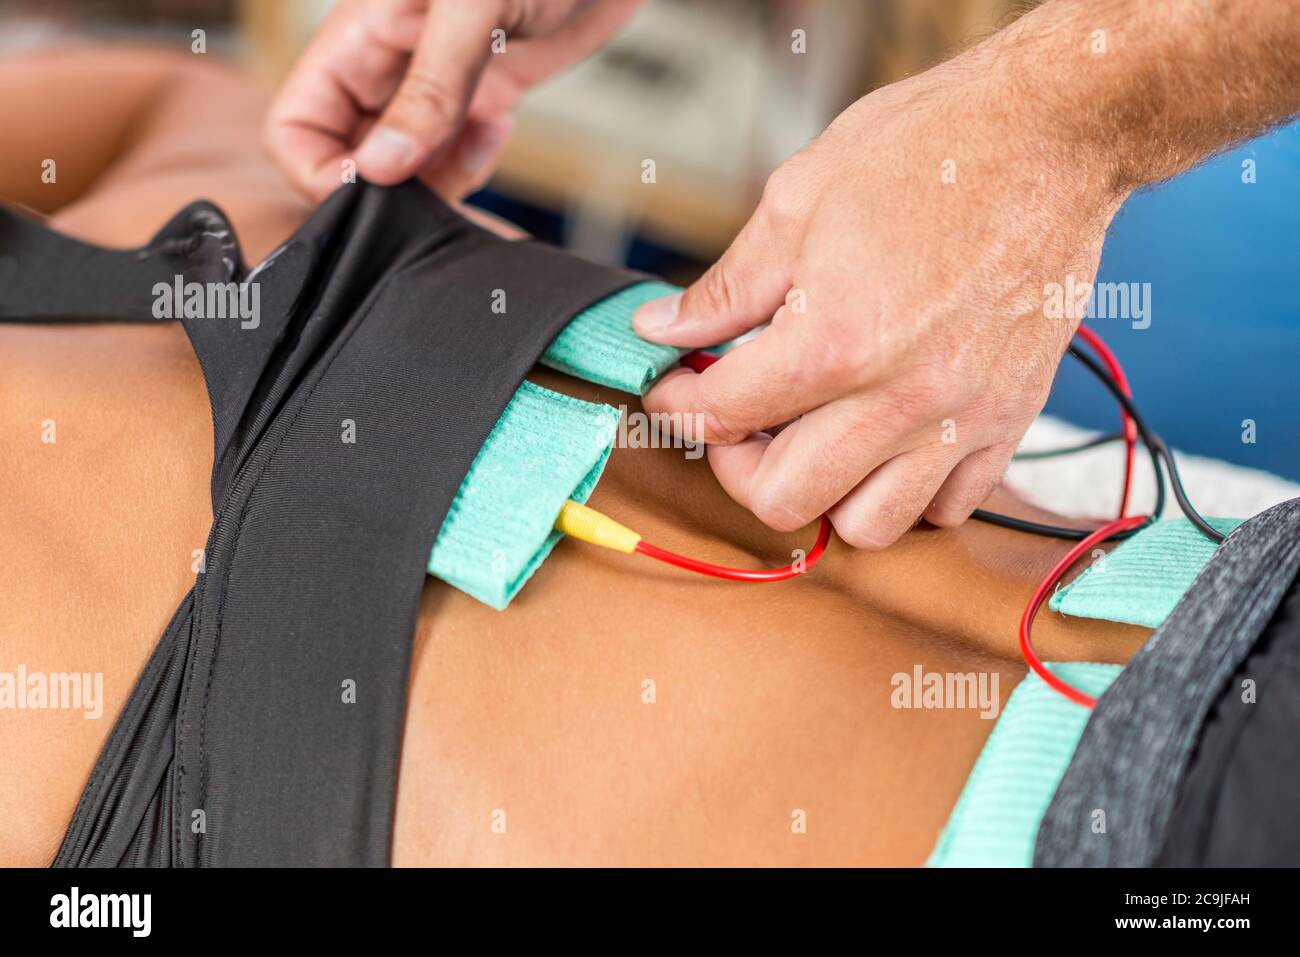 https://c8.alamy.com/compes/2c9jfah/estimulacion-muscular-electrica-en-terapia-fisica-terapeuta-colocando-electrodos-en-los-musculos-de-la-parte-baja-de-la-espalda-de-una-atleta-femenina-2c9jfah.jpg